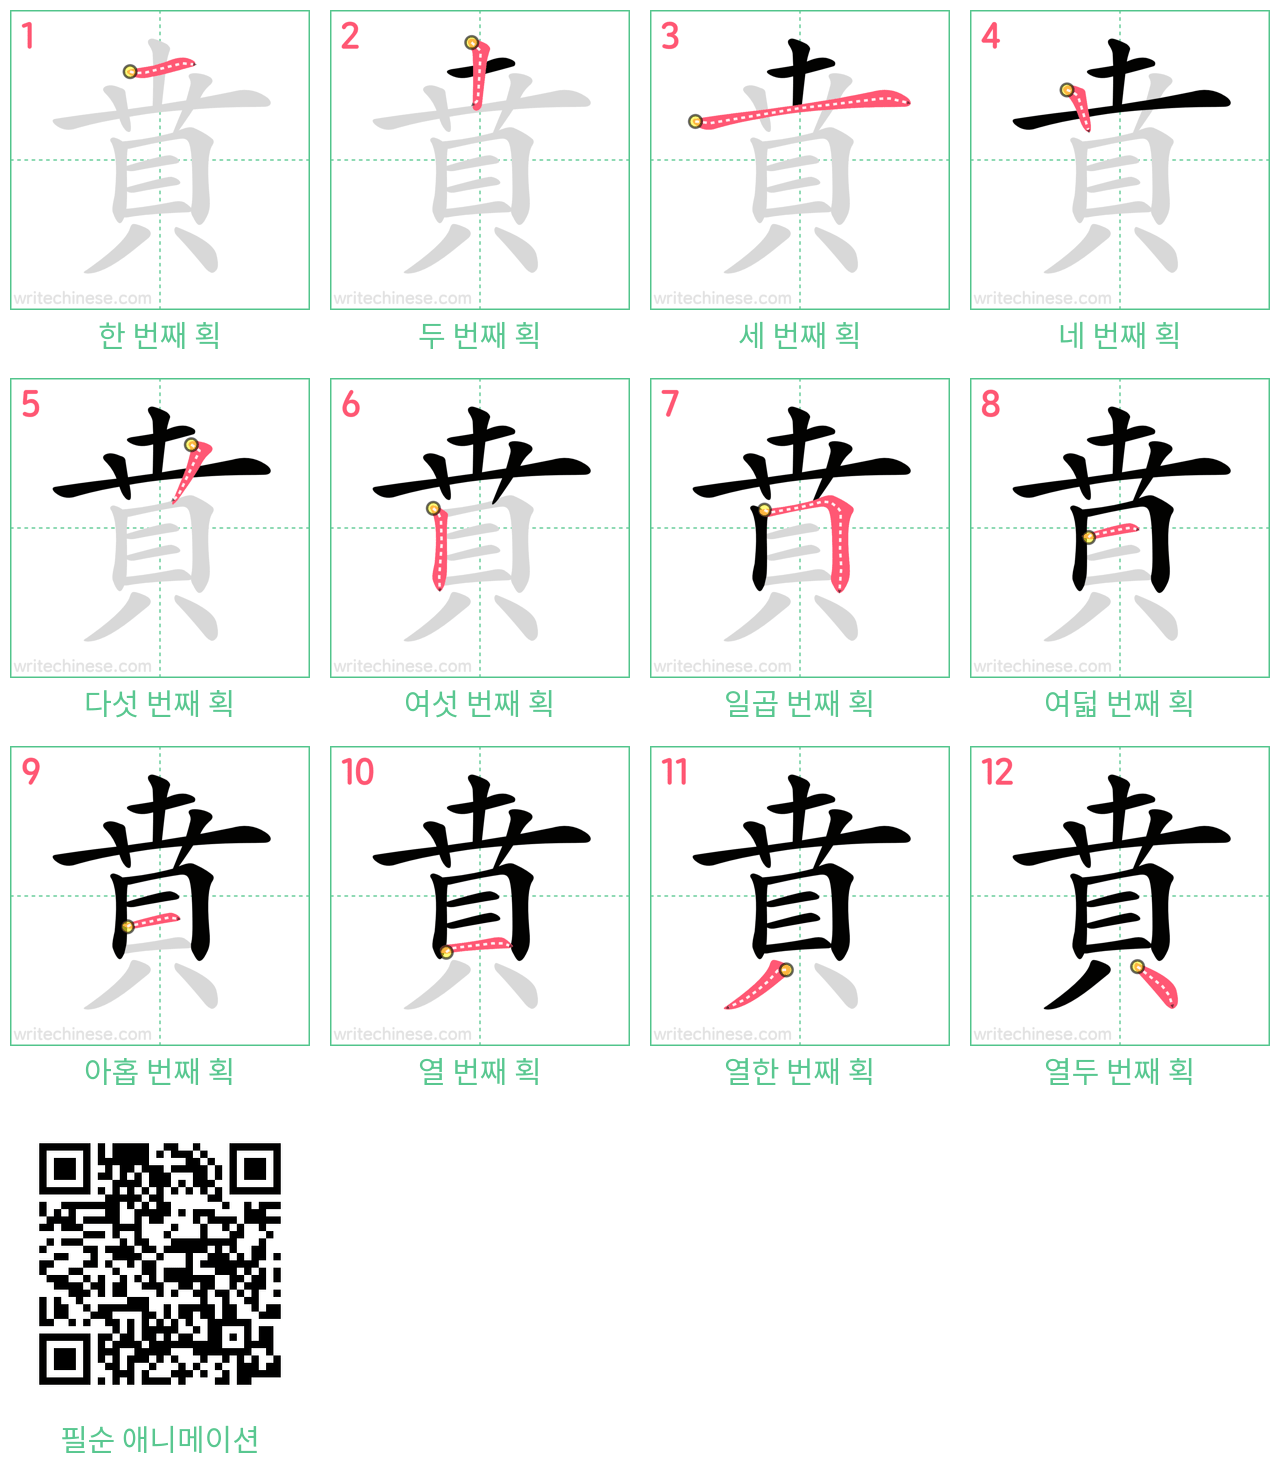 賁 step-by-step stroke order diagrams